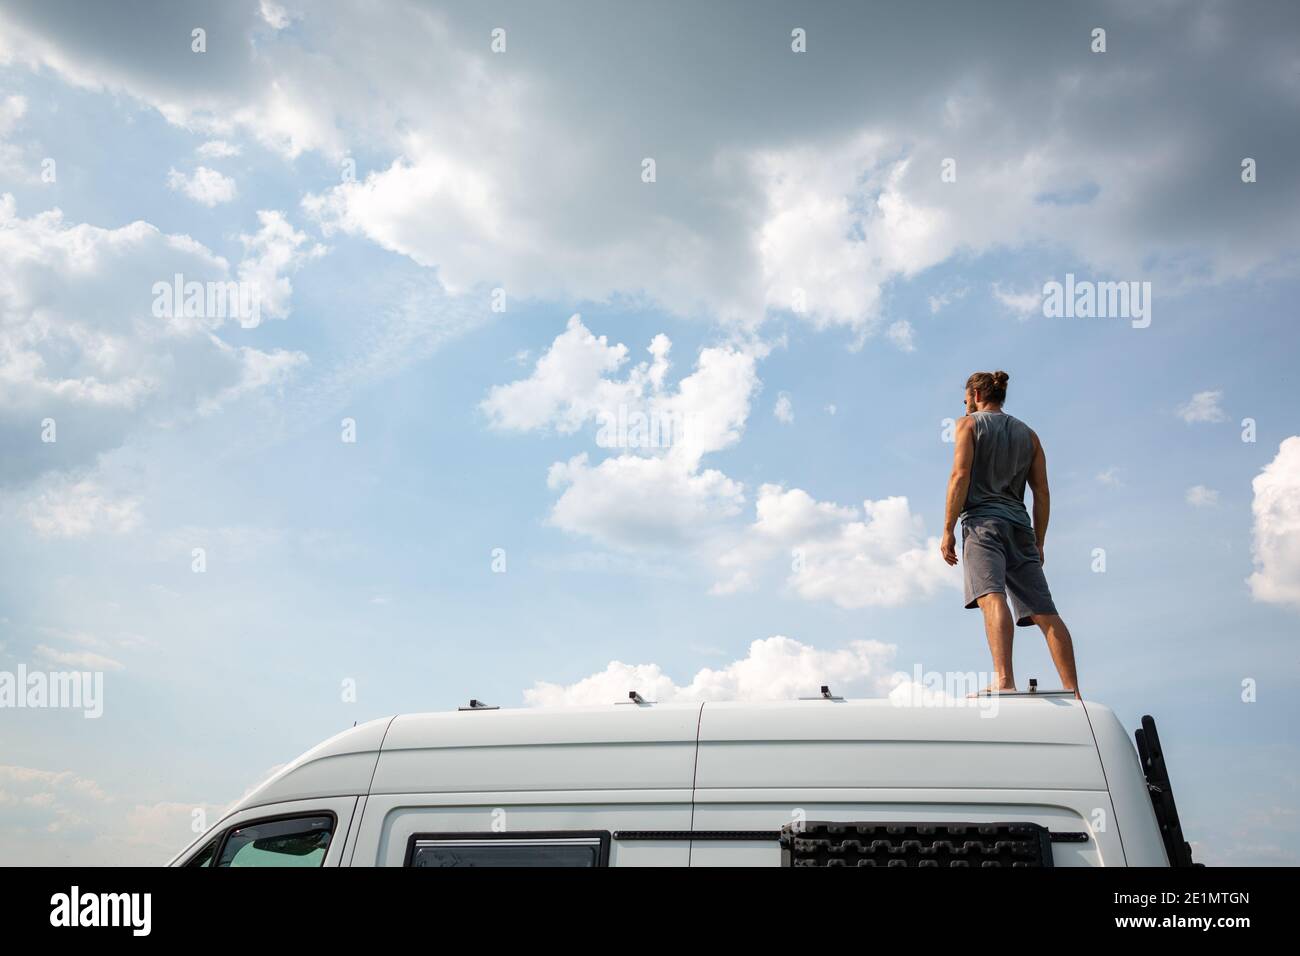 Man standing on top of his camper van Stock Photo